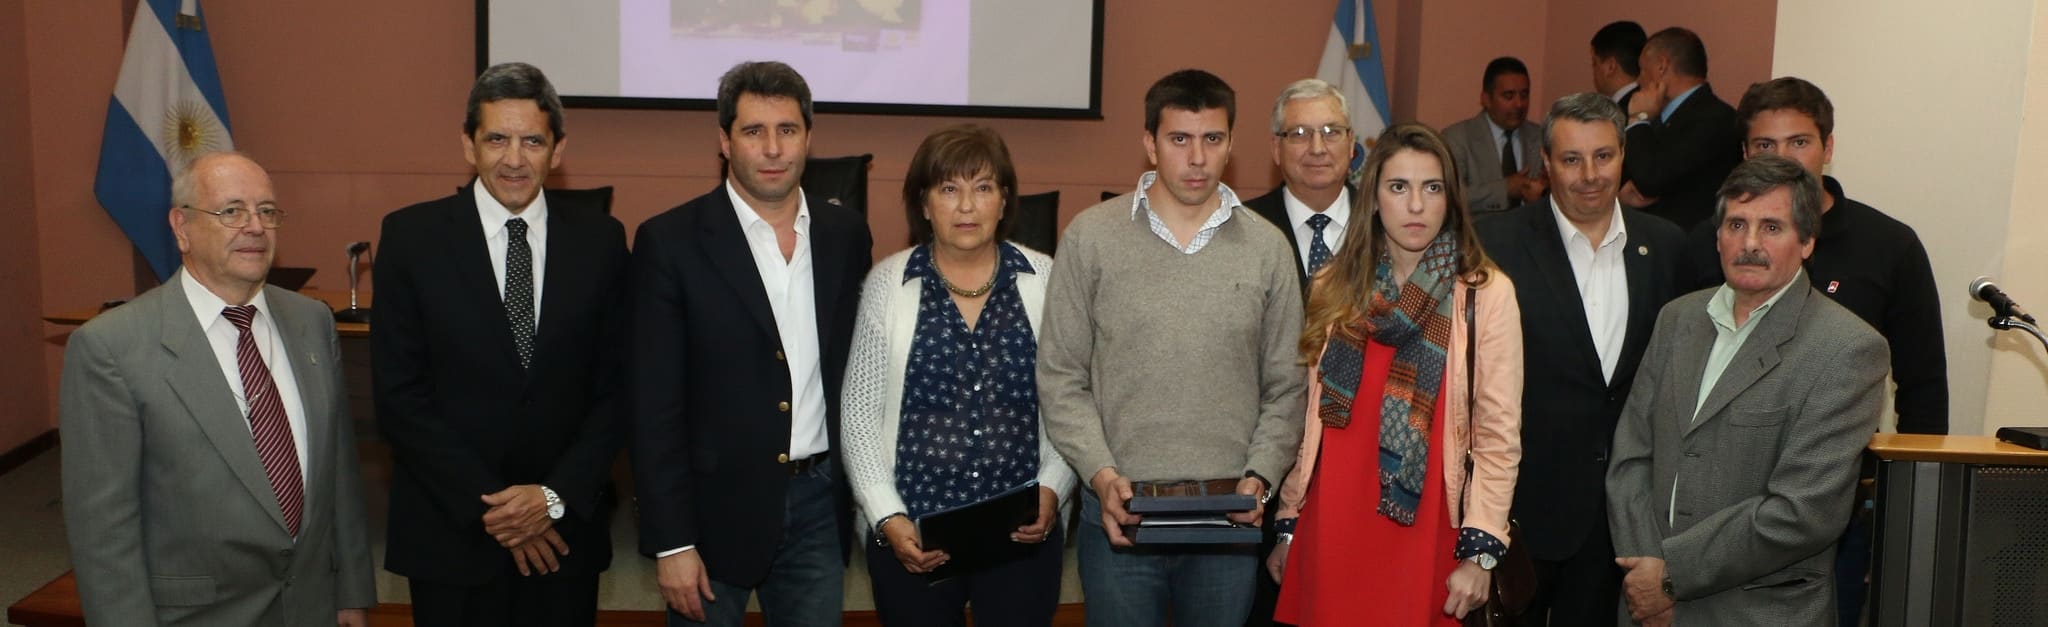 El Dr. Sergio Uñac encabezó la entrega de la distinción para Raúl Márquez a los familiares presentes.